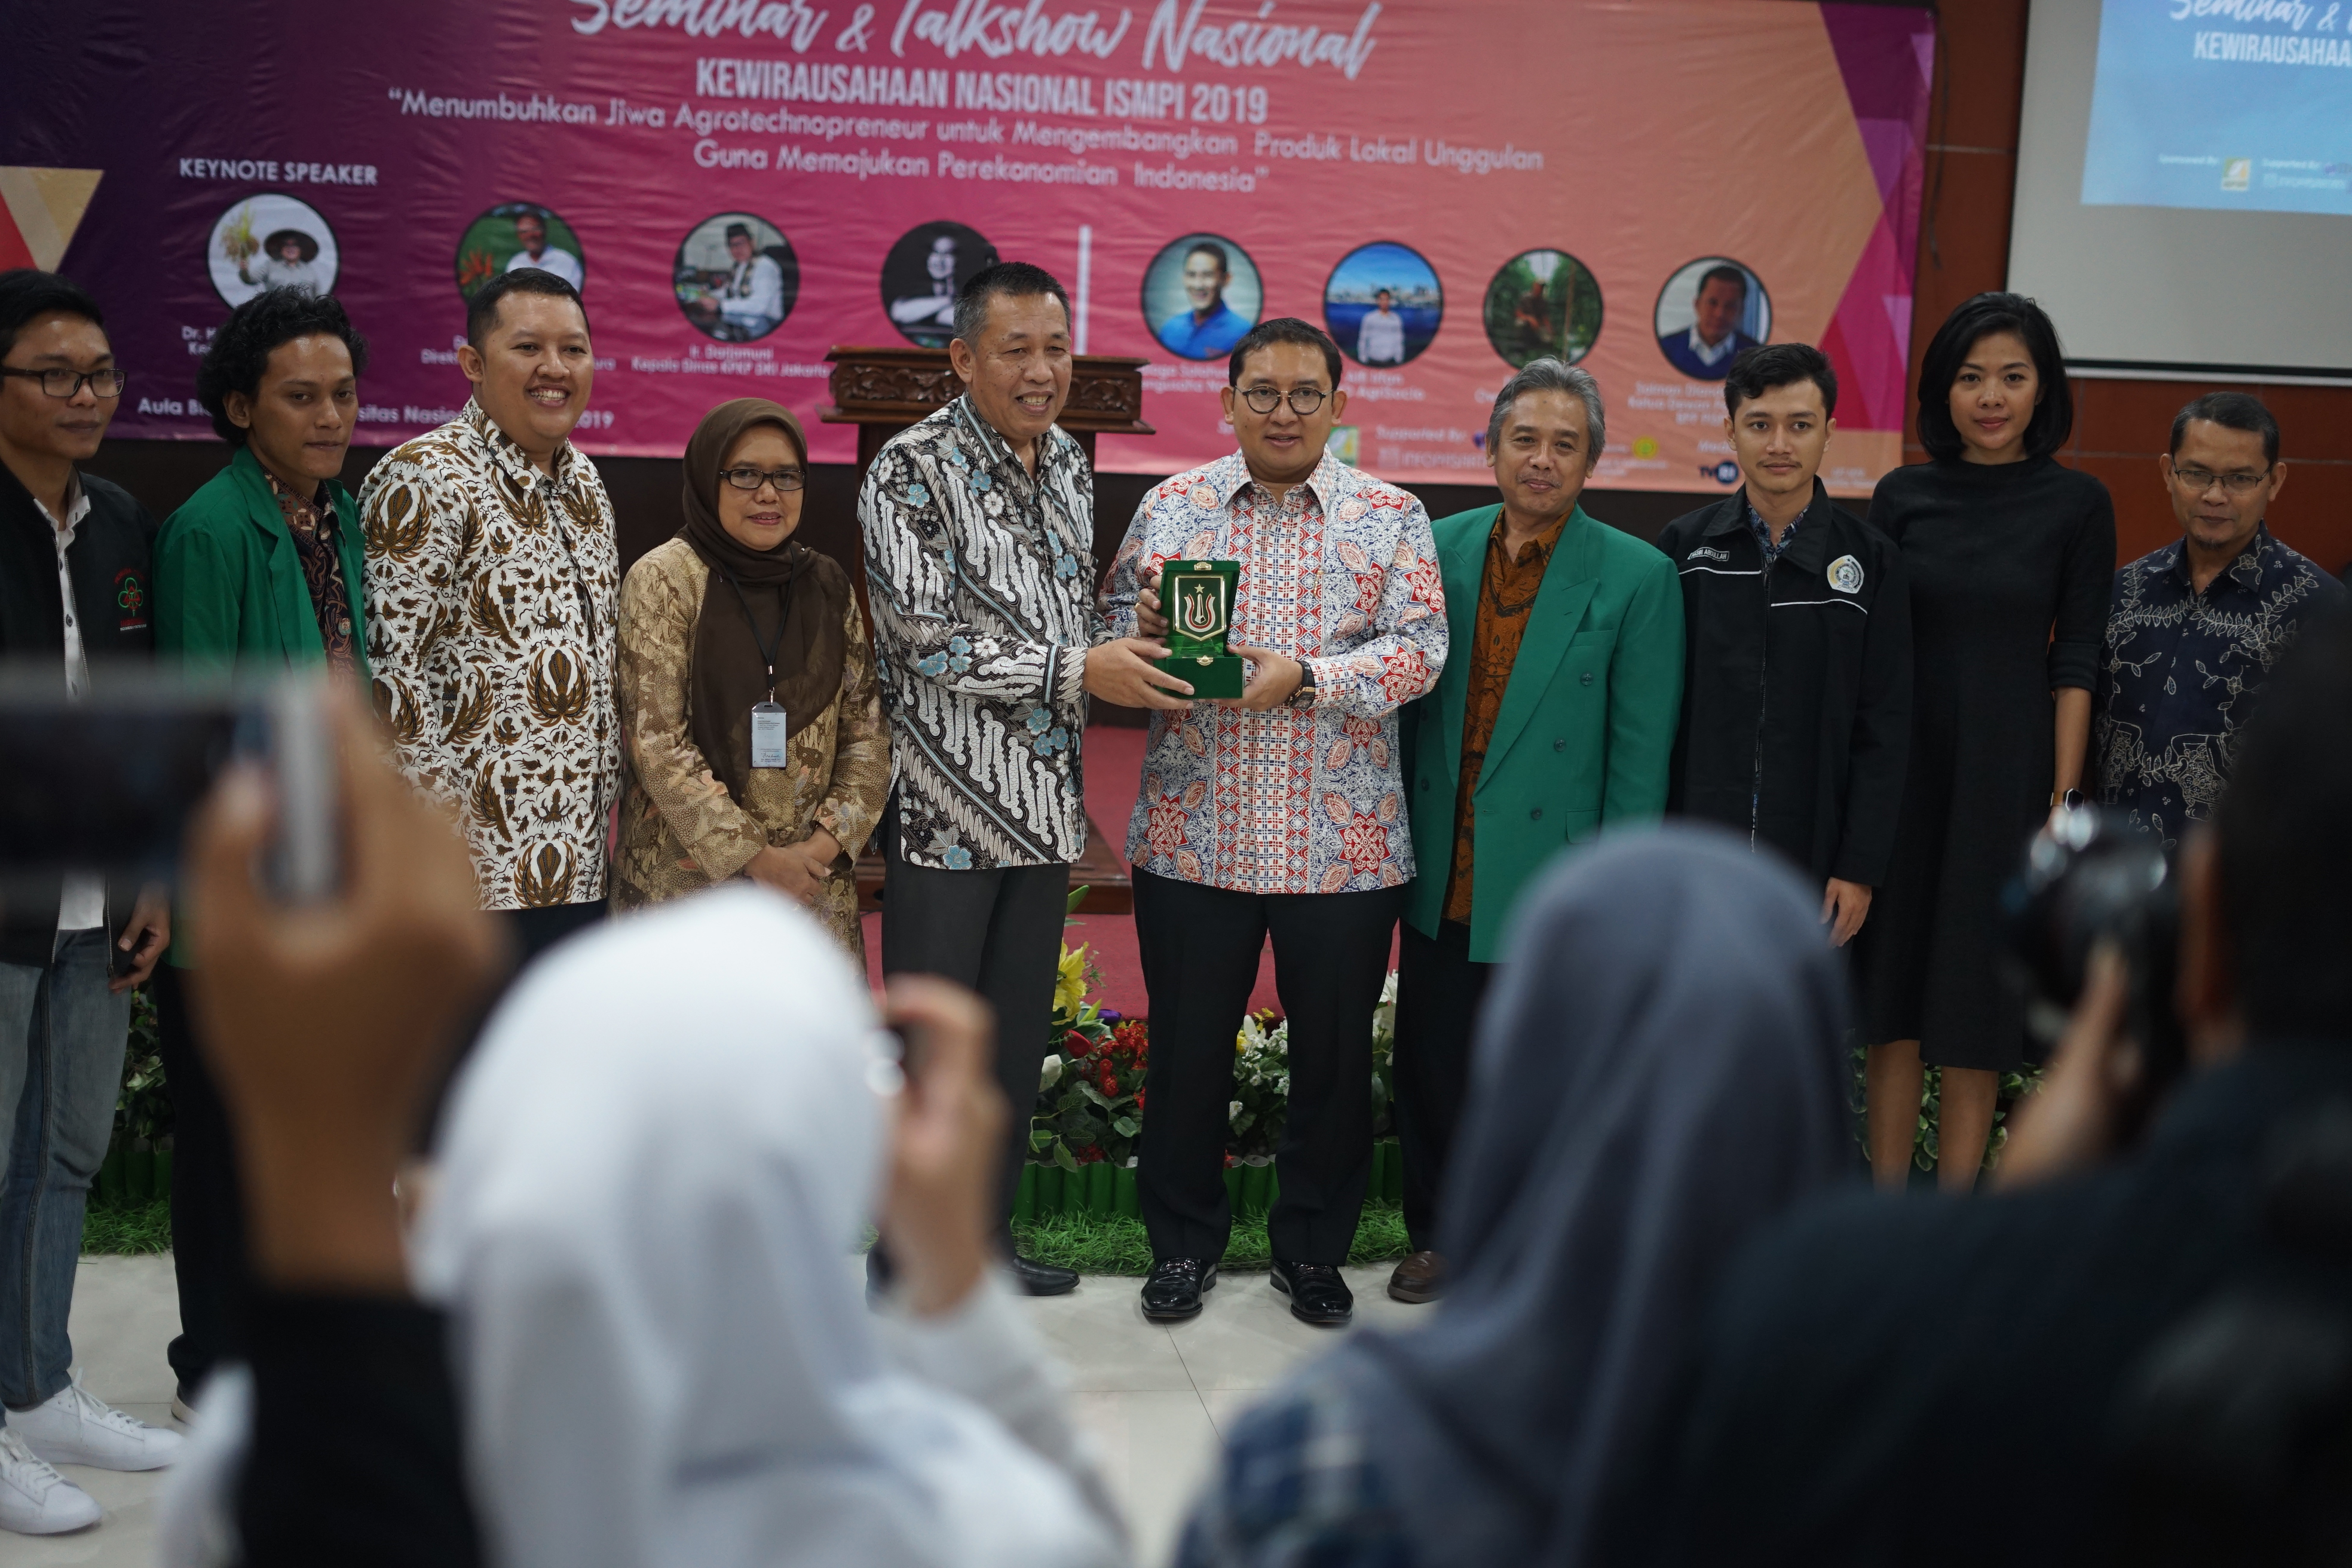 Faldi Zon Ketua Umum DPN HKTI menerima plakat dari Universitas Nasional yang diberikan oleh Dr. Drs. Zainul Djumadin, M.Si,Wakil Rektor Bidang Kemahasiswaan setelah menjadi pembicara diacara seminar Kewiraushaan Nasional ISMPI di kampus UNAS Pasar Minggu Jakarta Selatan (10/7).